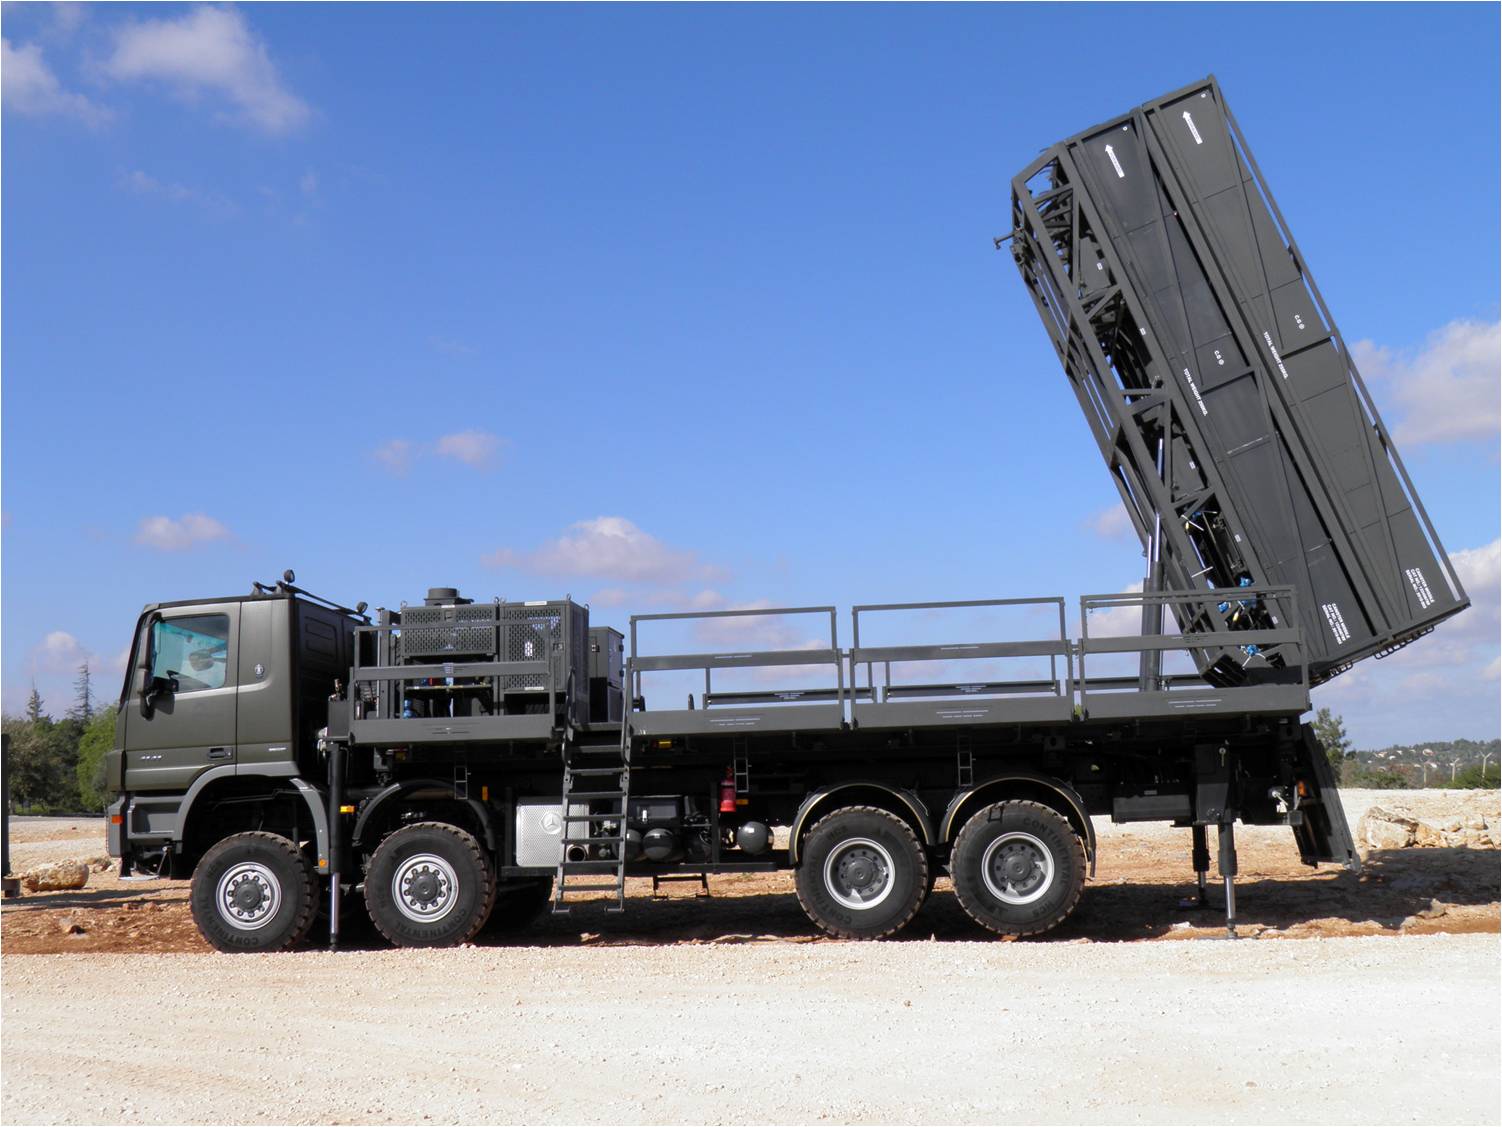 التشيك تشتري أنظمة صواريخ الدفاع الجوي الإسرائيلية رافائيل سبايدر..تعرف مميزاتها